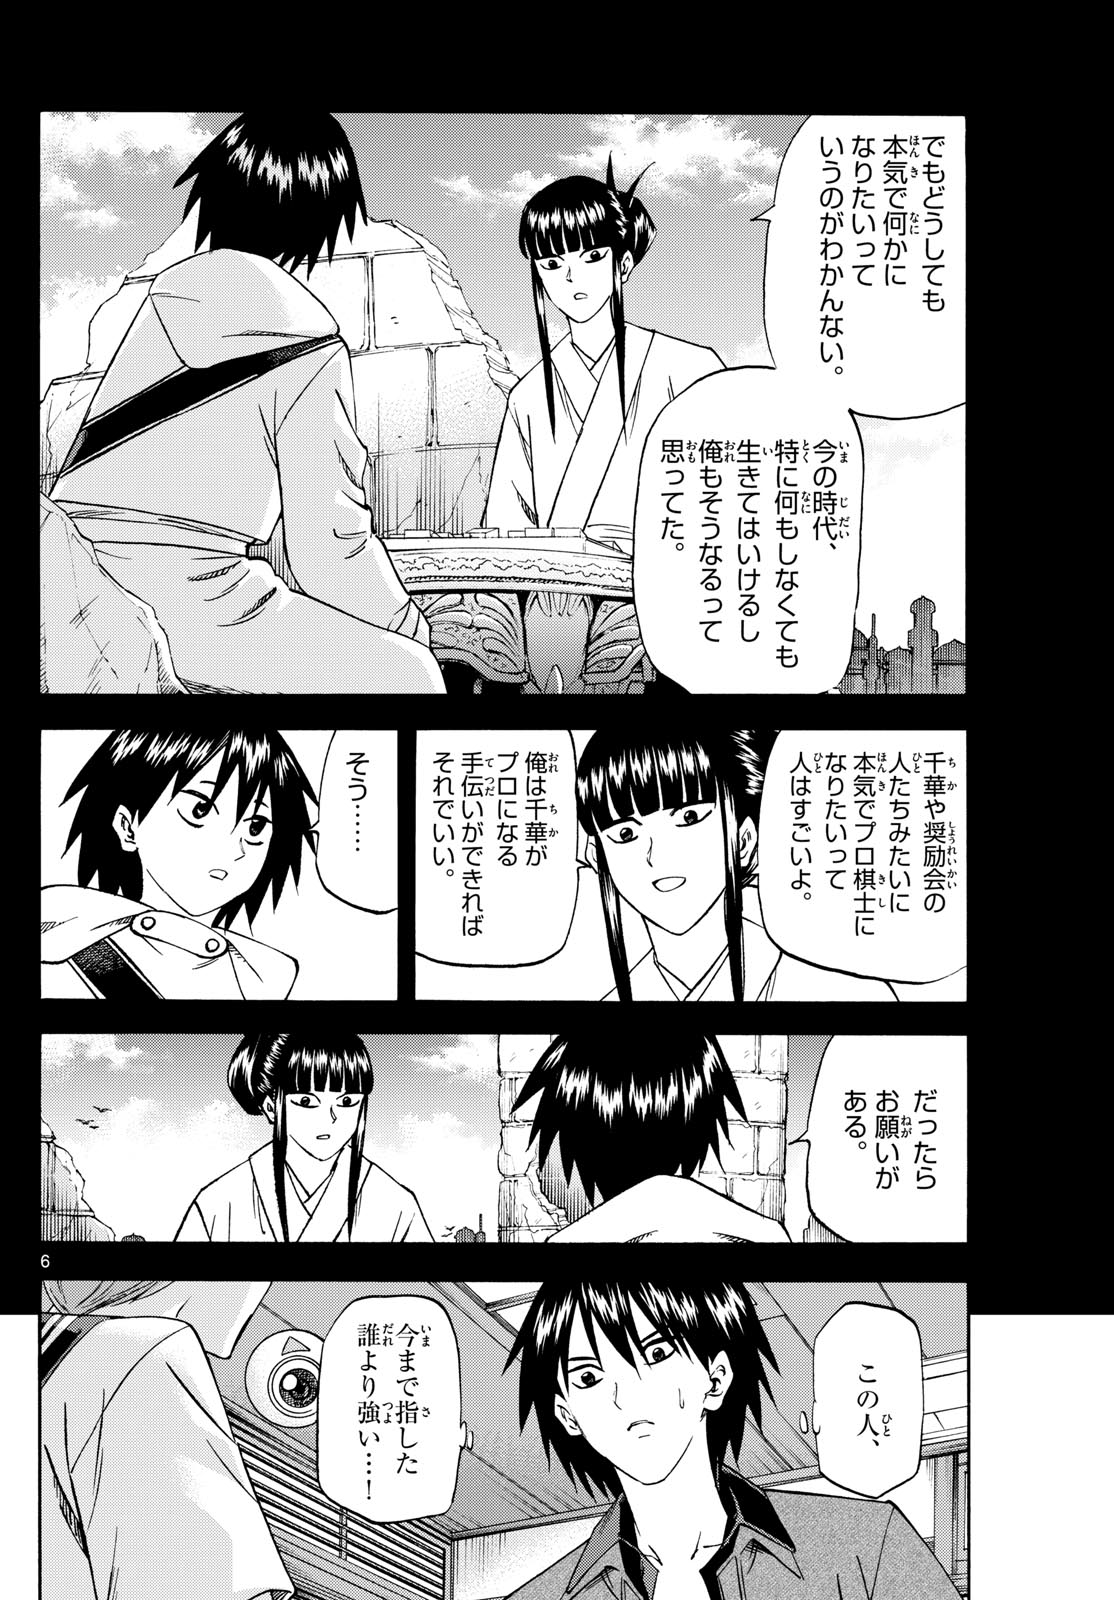 Tatsu to Ichigo - Chapter 194 - Page 6